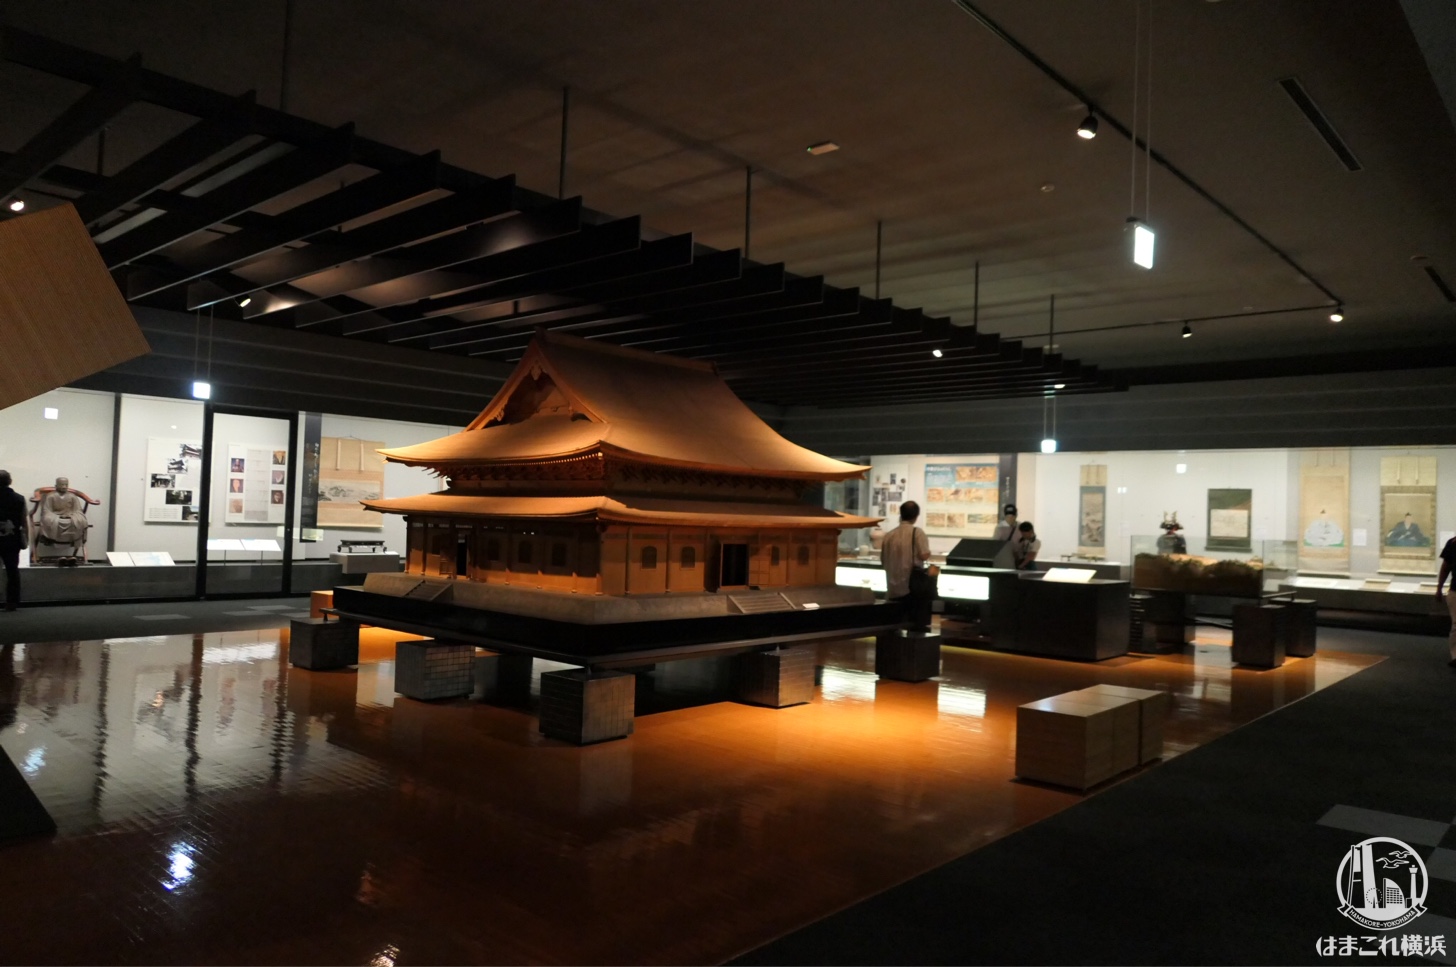 神奈川県立歴史博物館は旧石器時代から現代まで通しで知れる濃厚